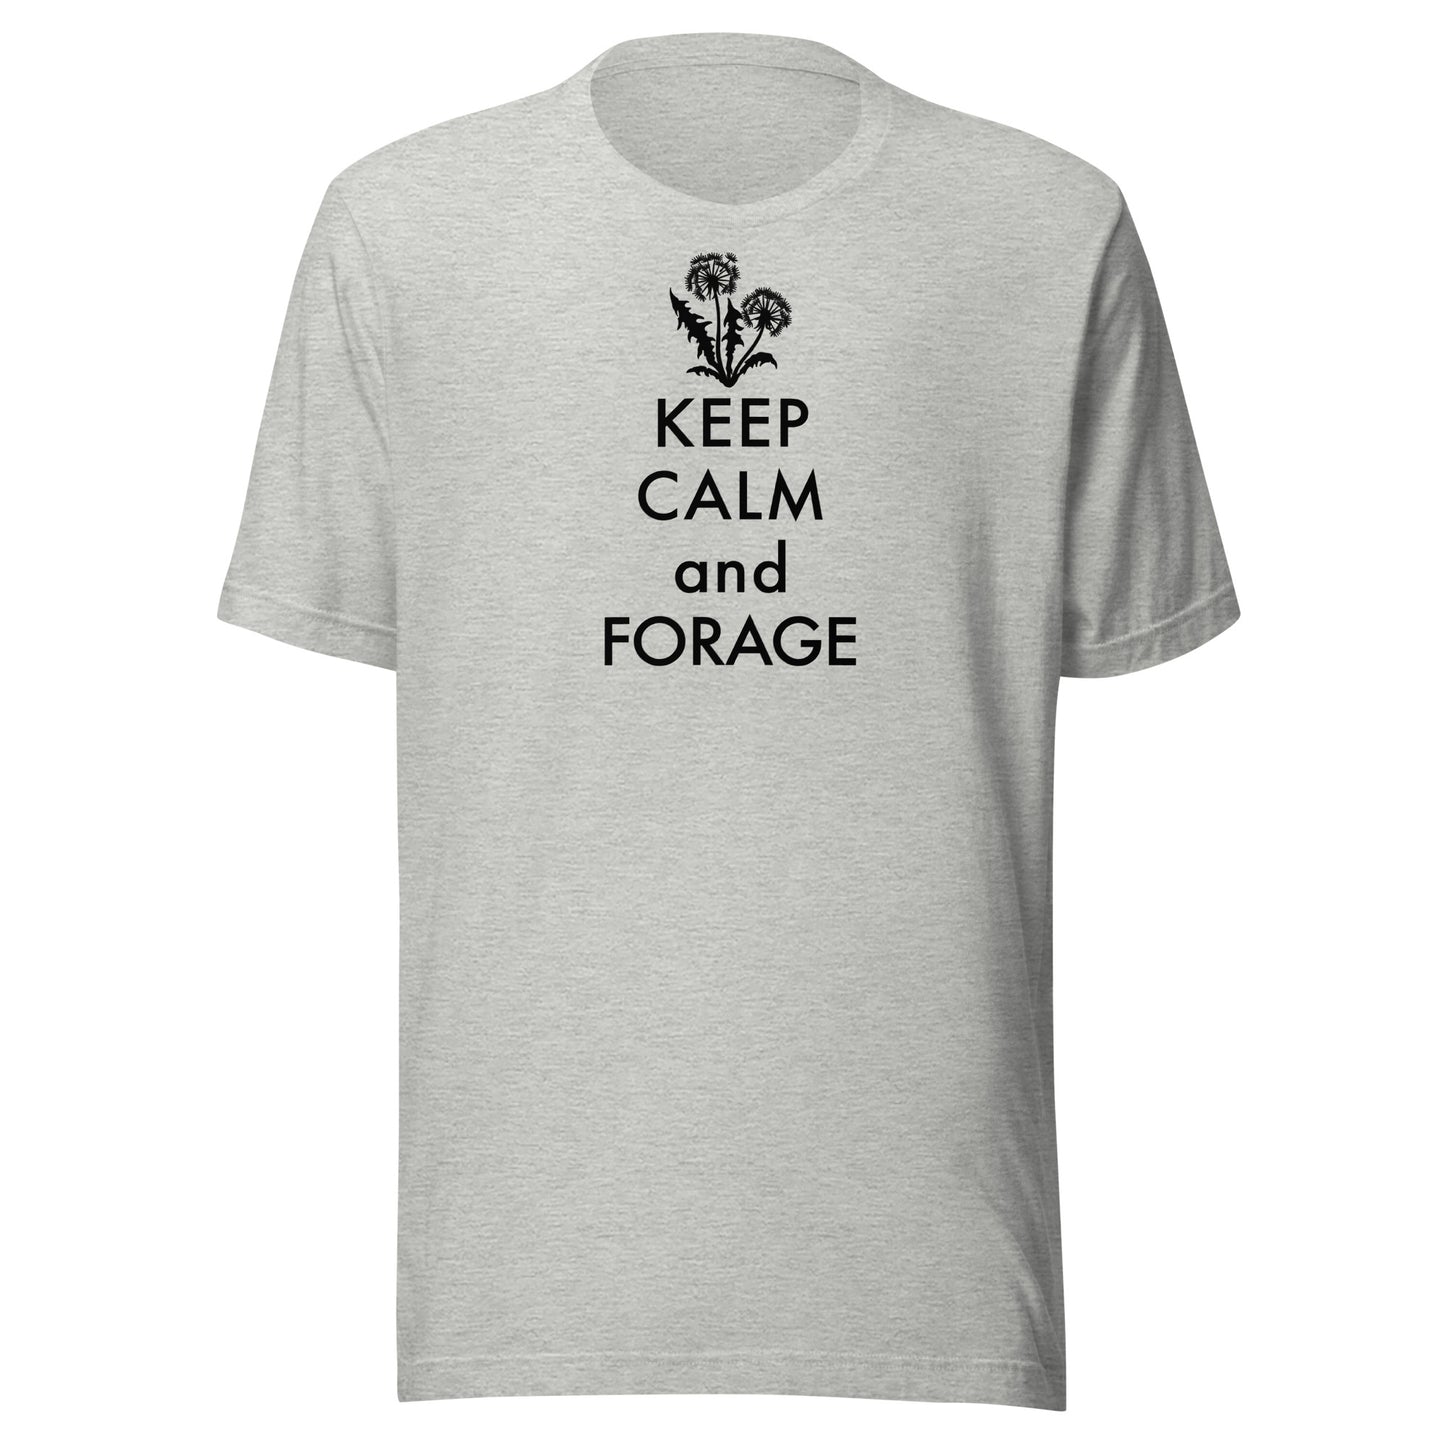 Retro Keep Calm and Forage T-Shirt